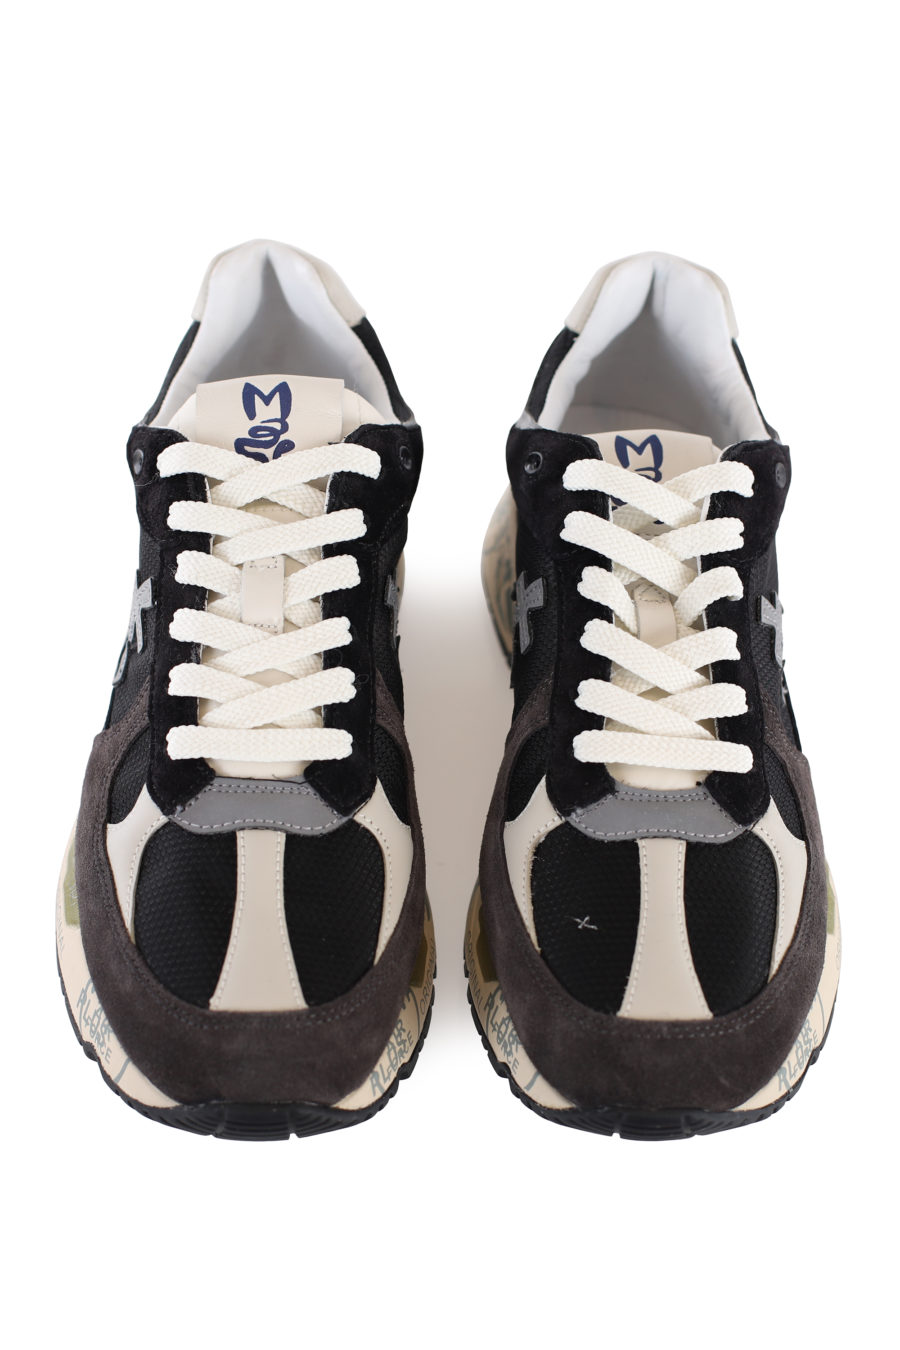 Zapatillas negras con detalles semi transparentes "Mase" - IMG 1660